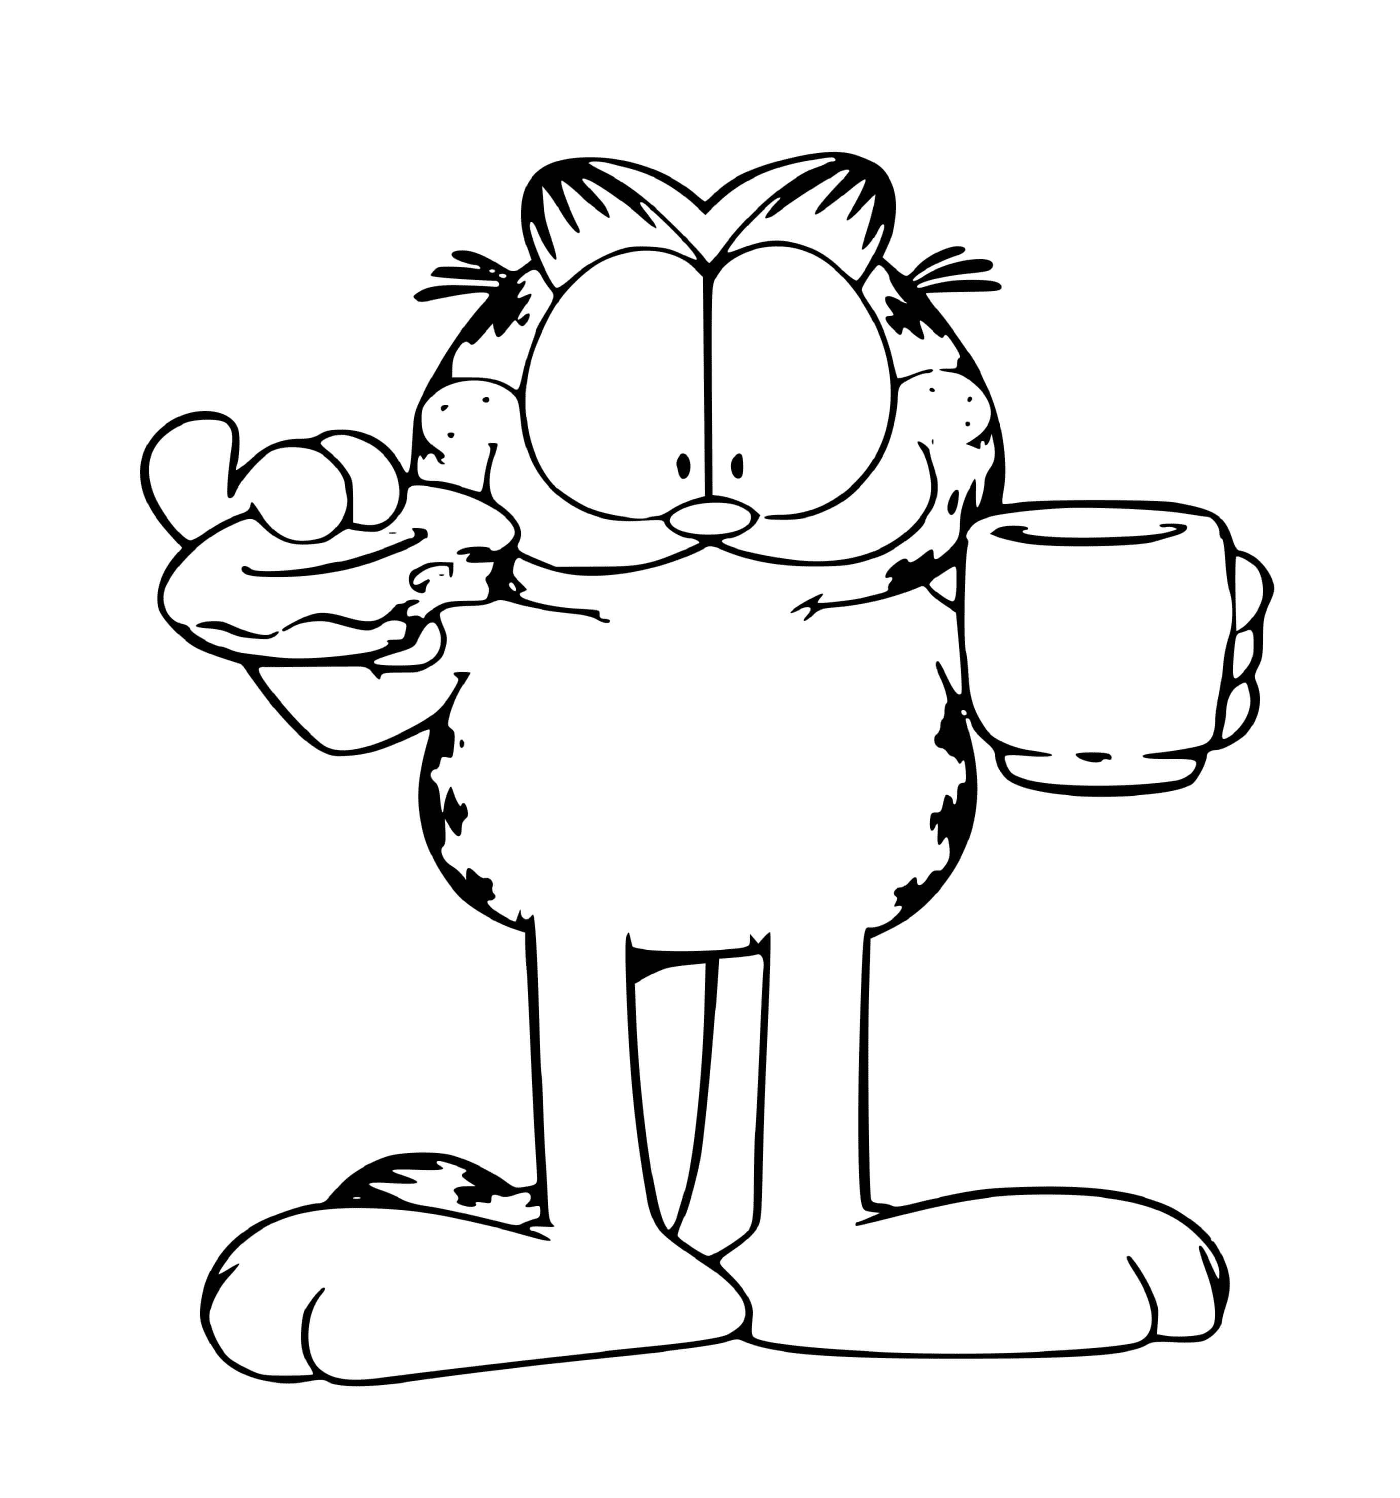  Garfield bebe café y come una rosquilla 